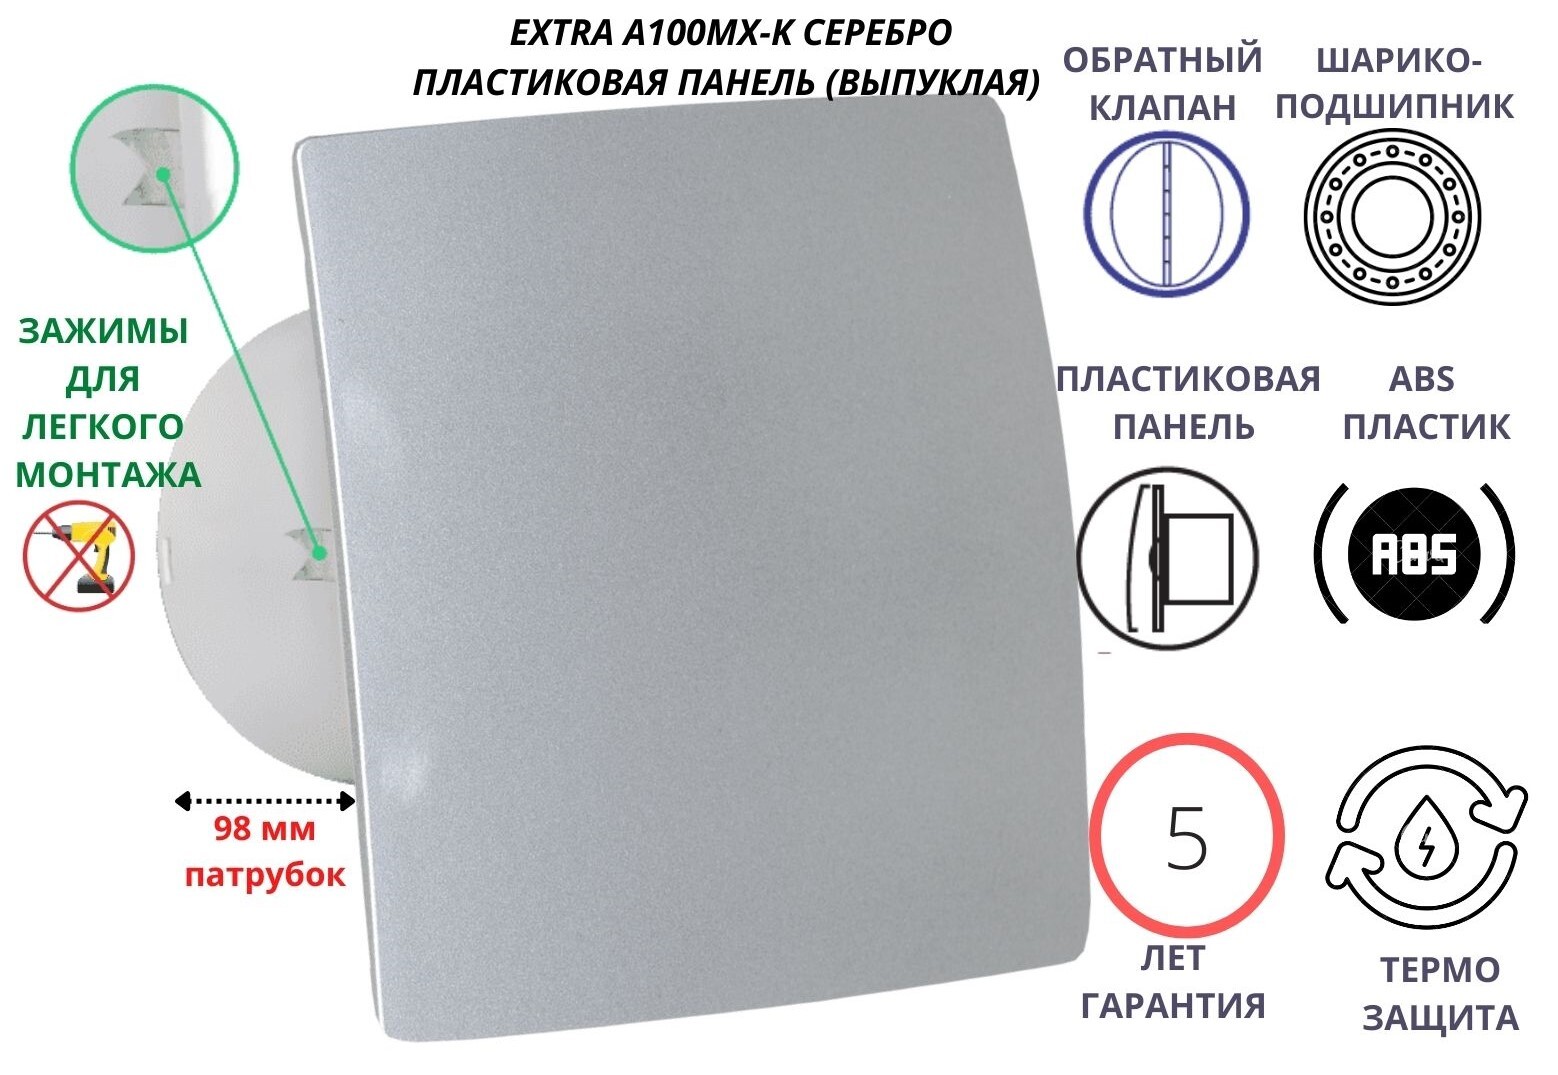 Вентилятор MTG D100 пластиковая серебристая панель крепеж без сверления IP-A100МX-K Сербия